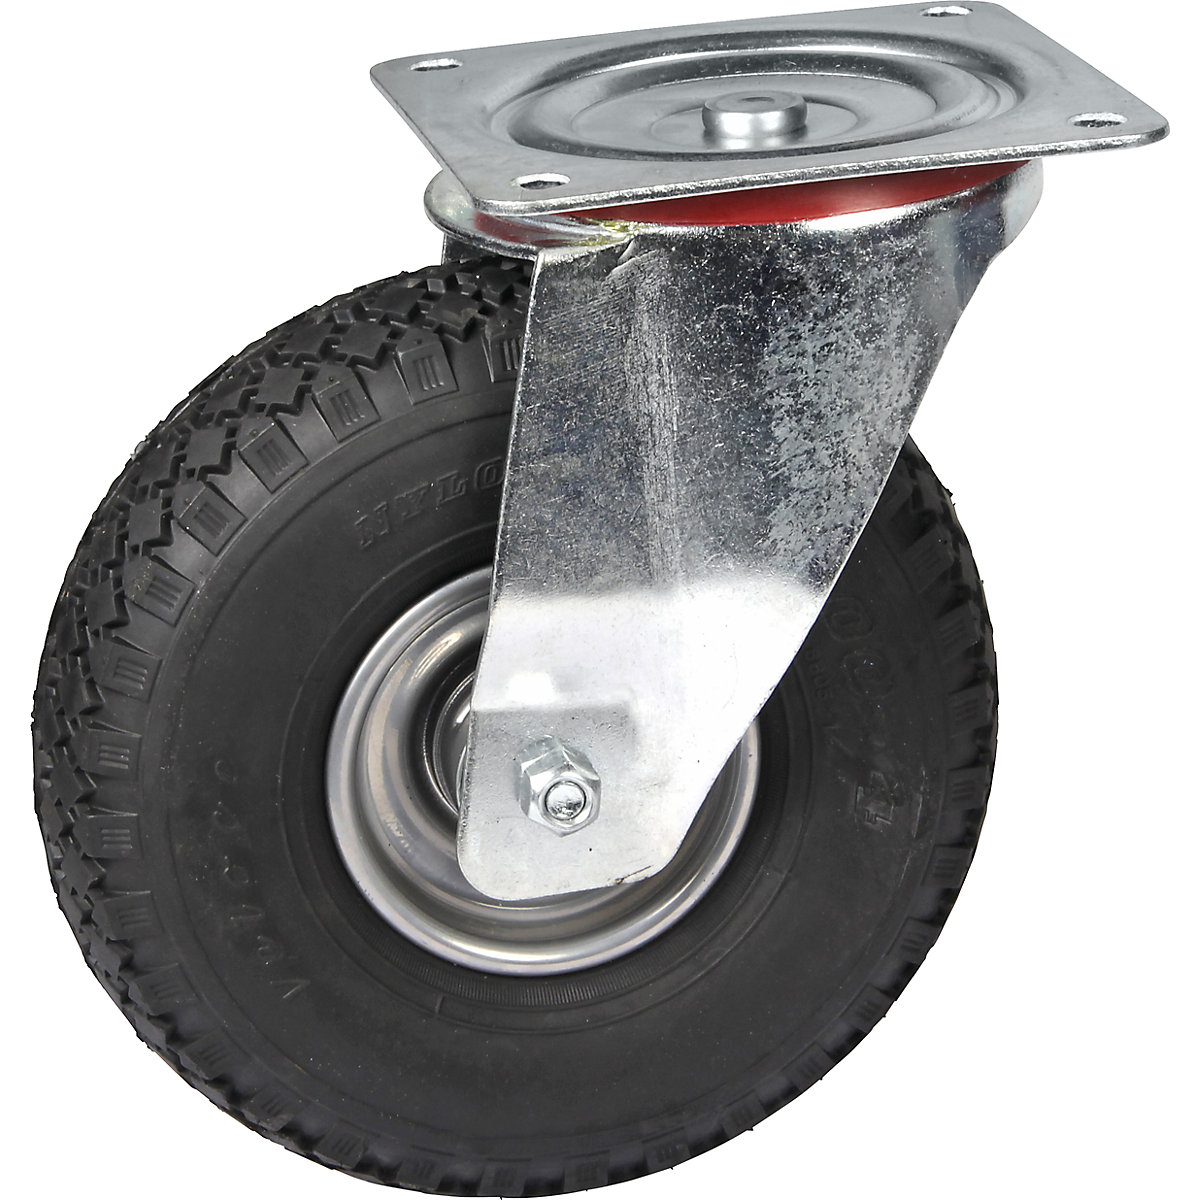 Pneumatic tyre on sheet steel rim, wheel Ø x width 260 x 85 mm, tyre profil block, swivel castor, with ball bearings-5